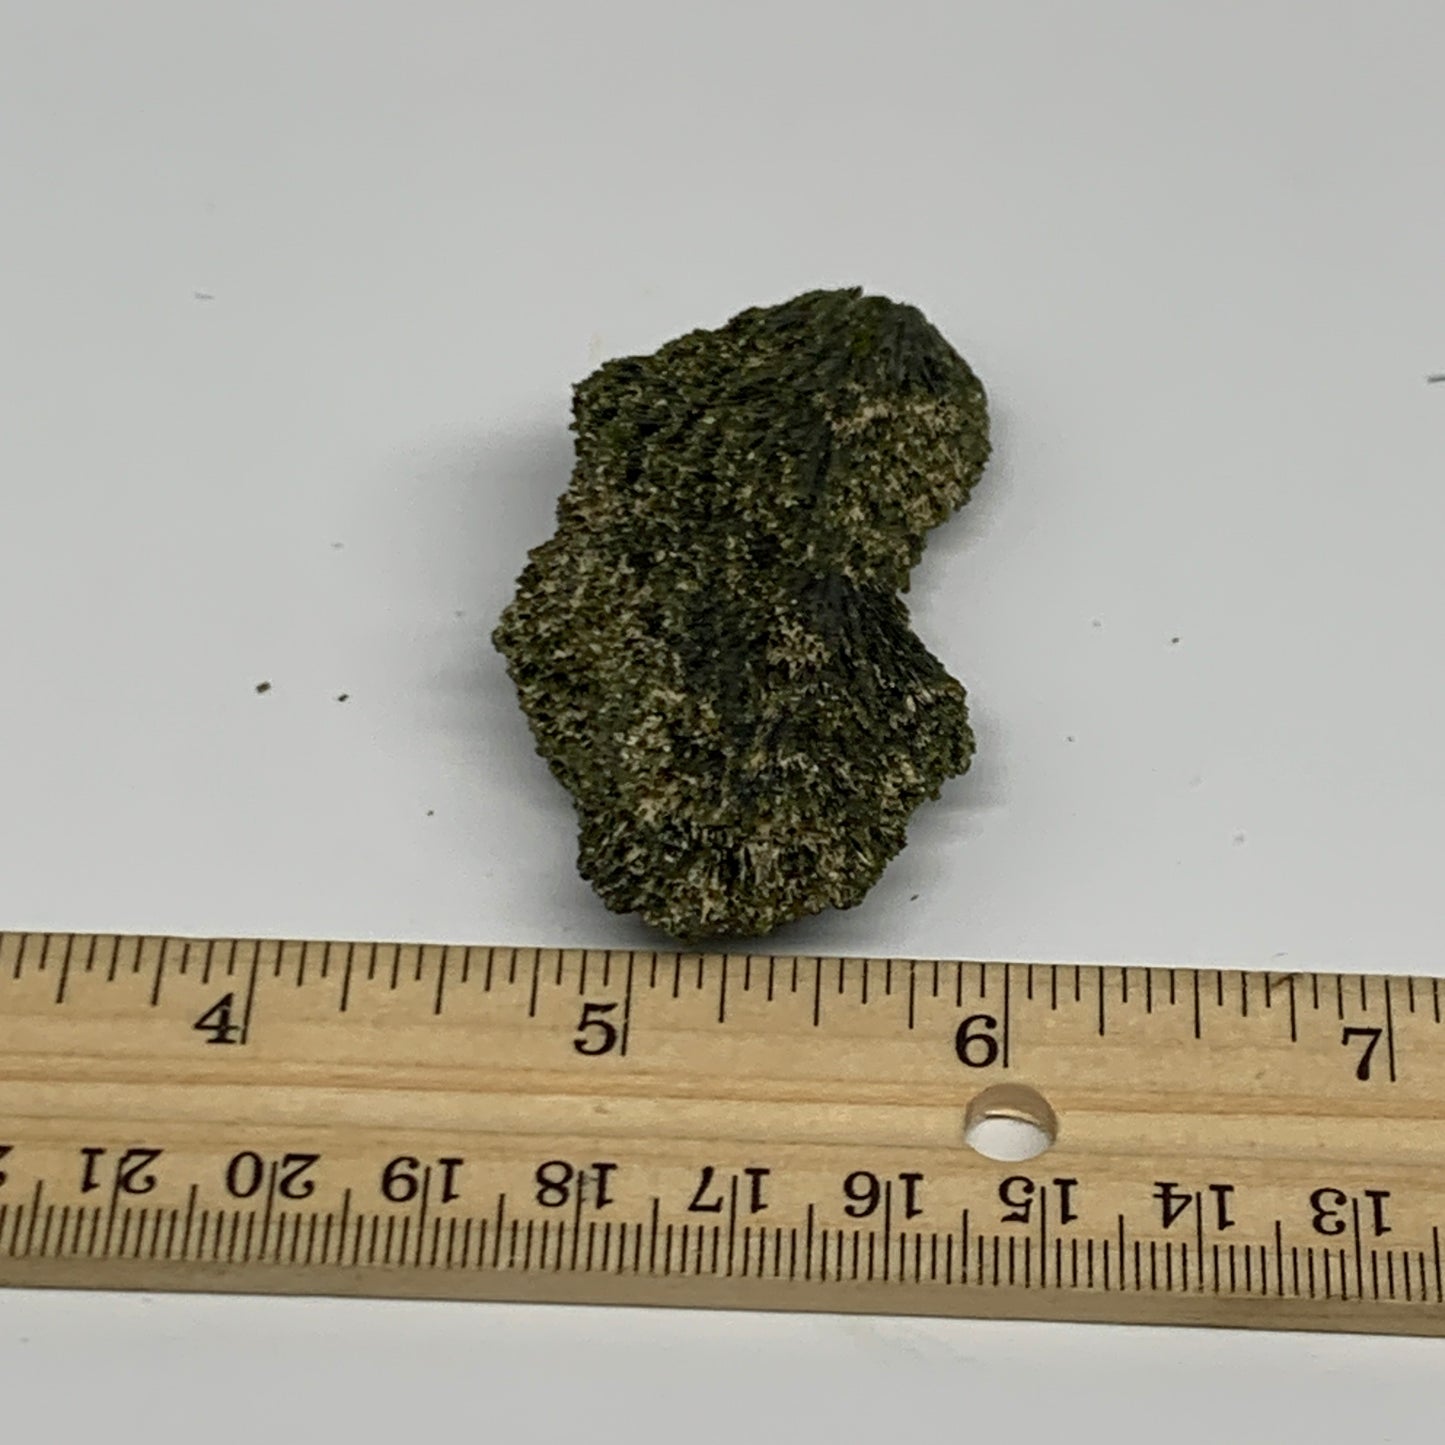 36.8g,2.6"x1.3"x0.7",Green Epidote Custer/Leaf Mineral Specimen @Pakistan,B27598